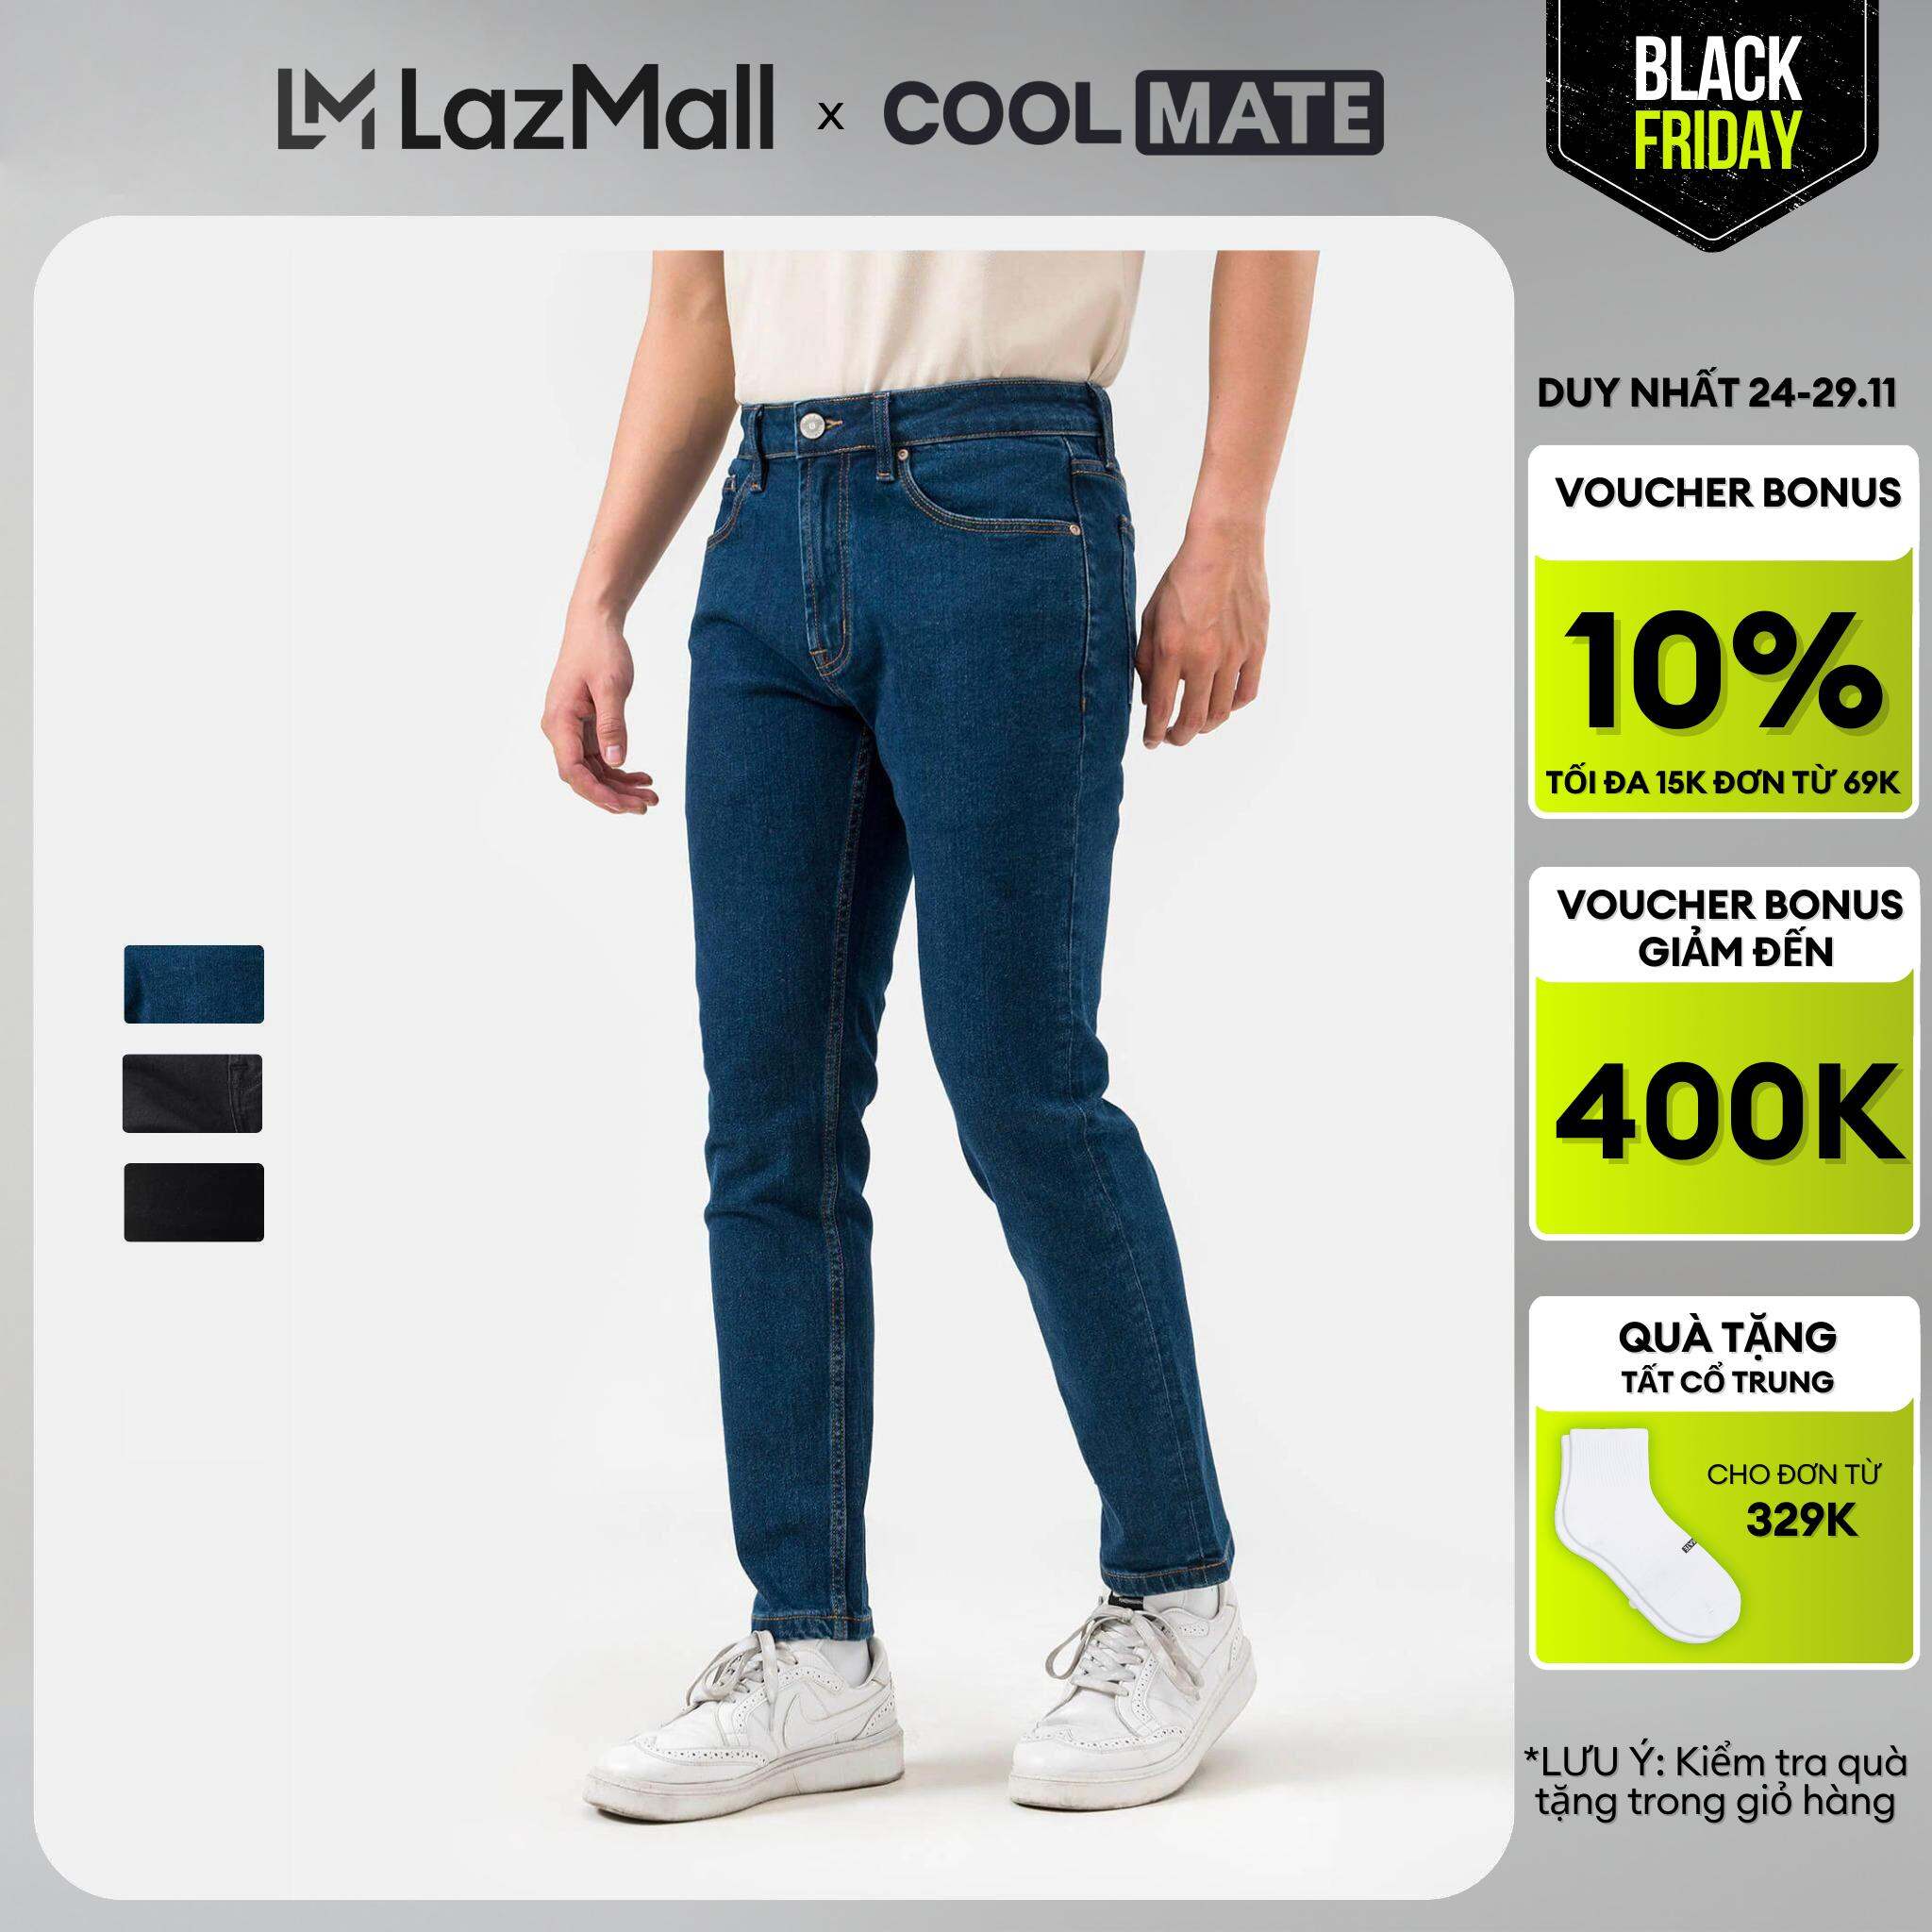 BLACK FRIDAY 24-29.11 TẶNG QUÀ ĐƠN 329KQuần Jeans Basics dáng Slim fit -